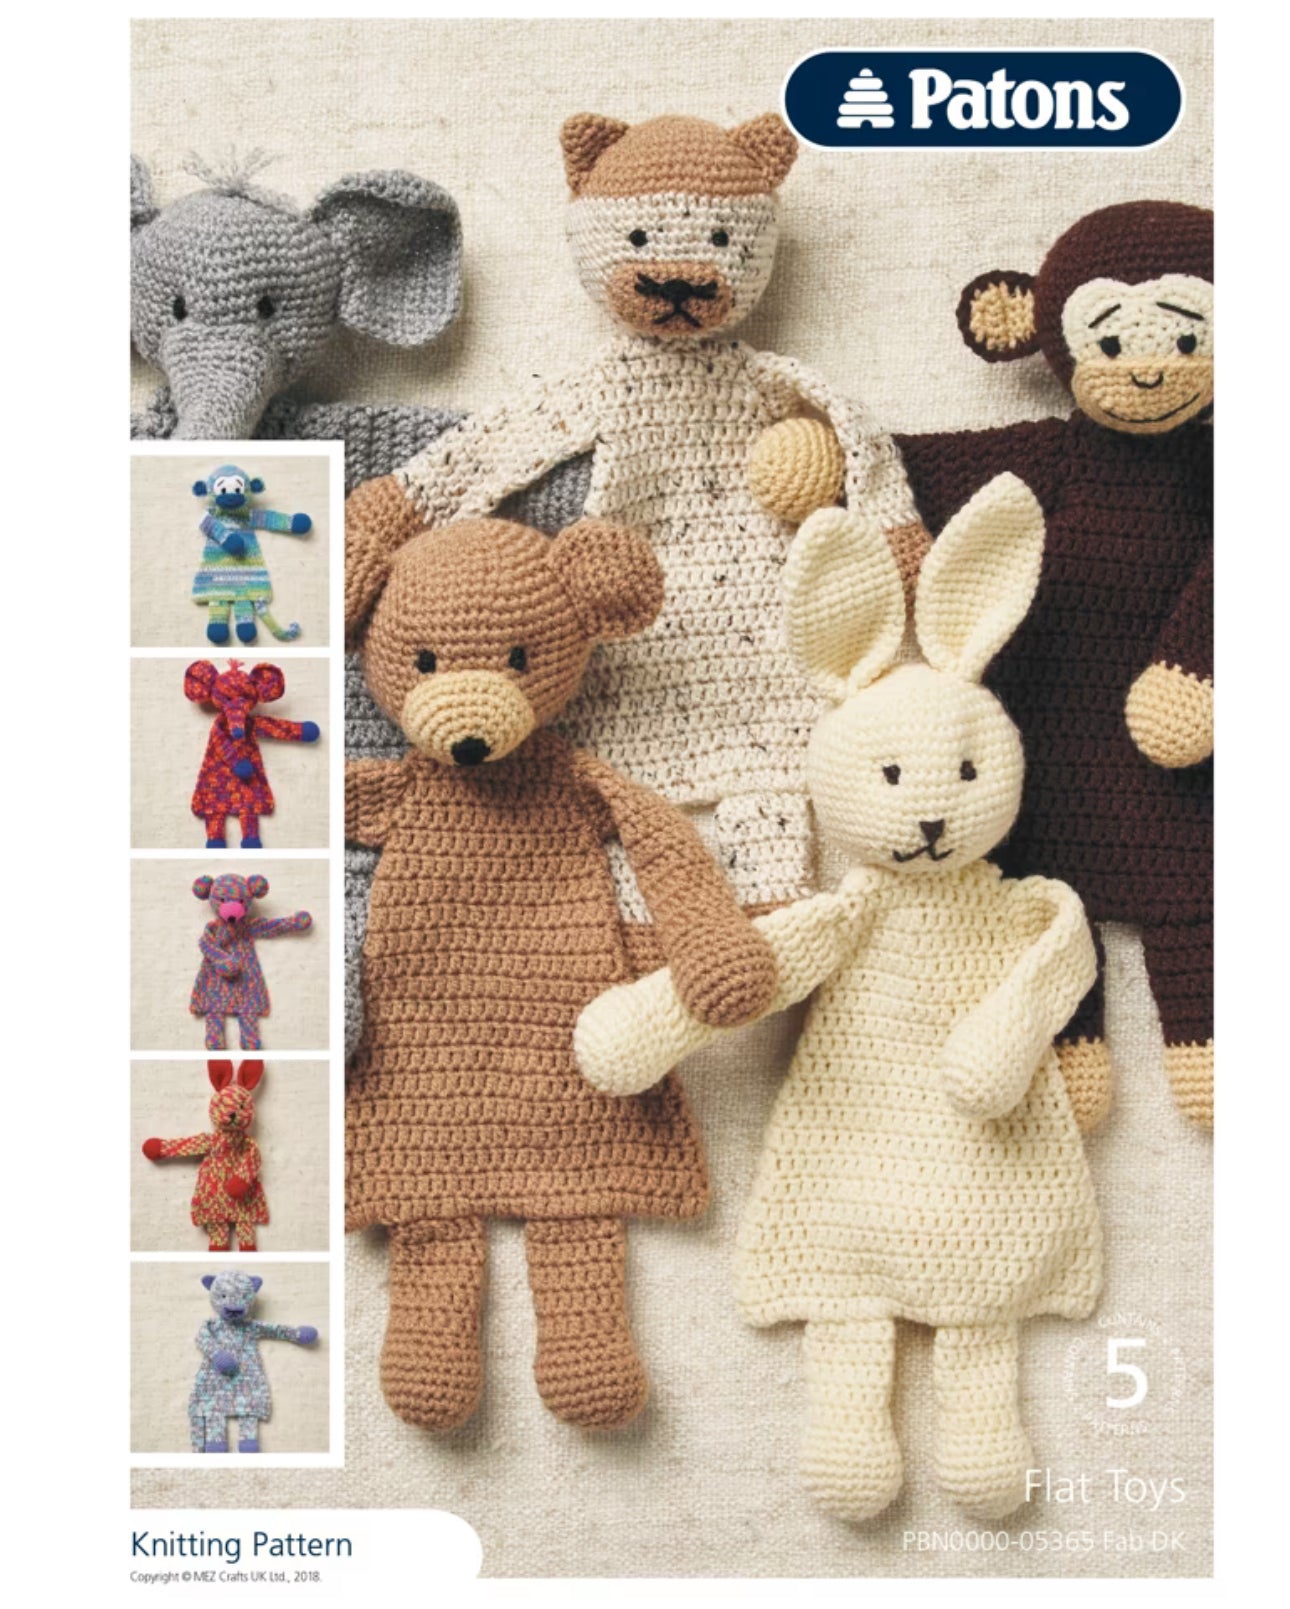 5 Flat Toys - Crochet Pattern (FREE PDF Download)